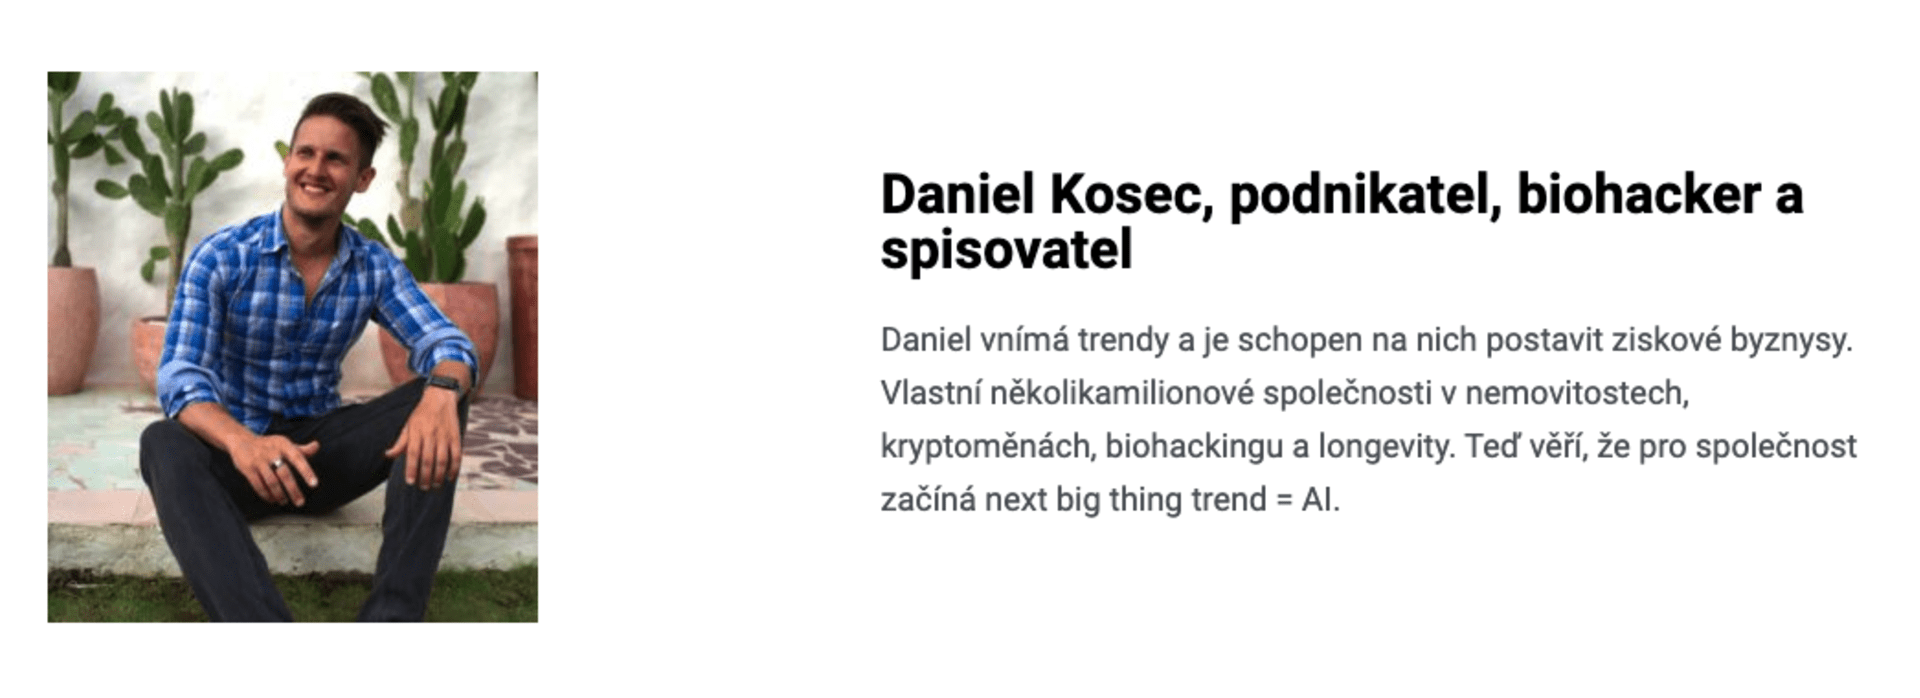 Daniel Kosec